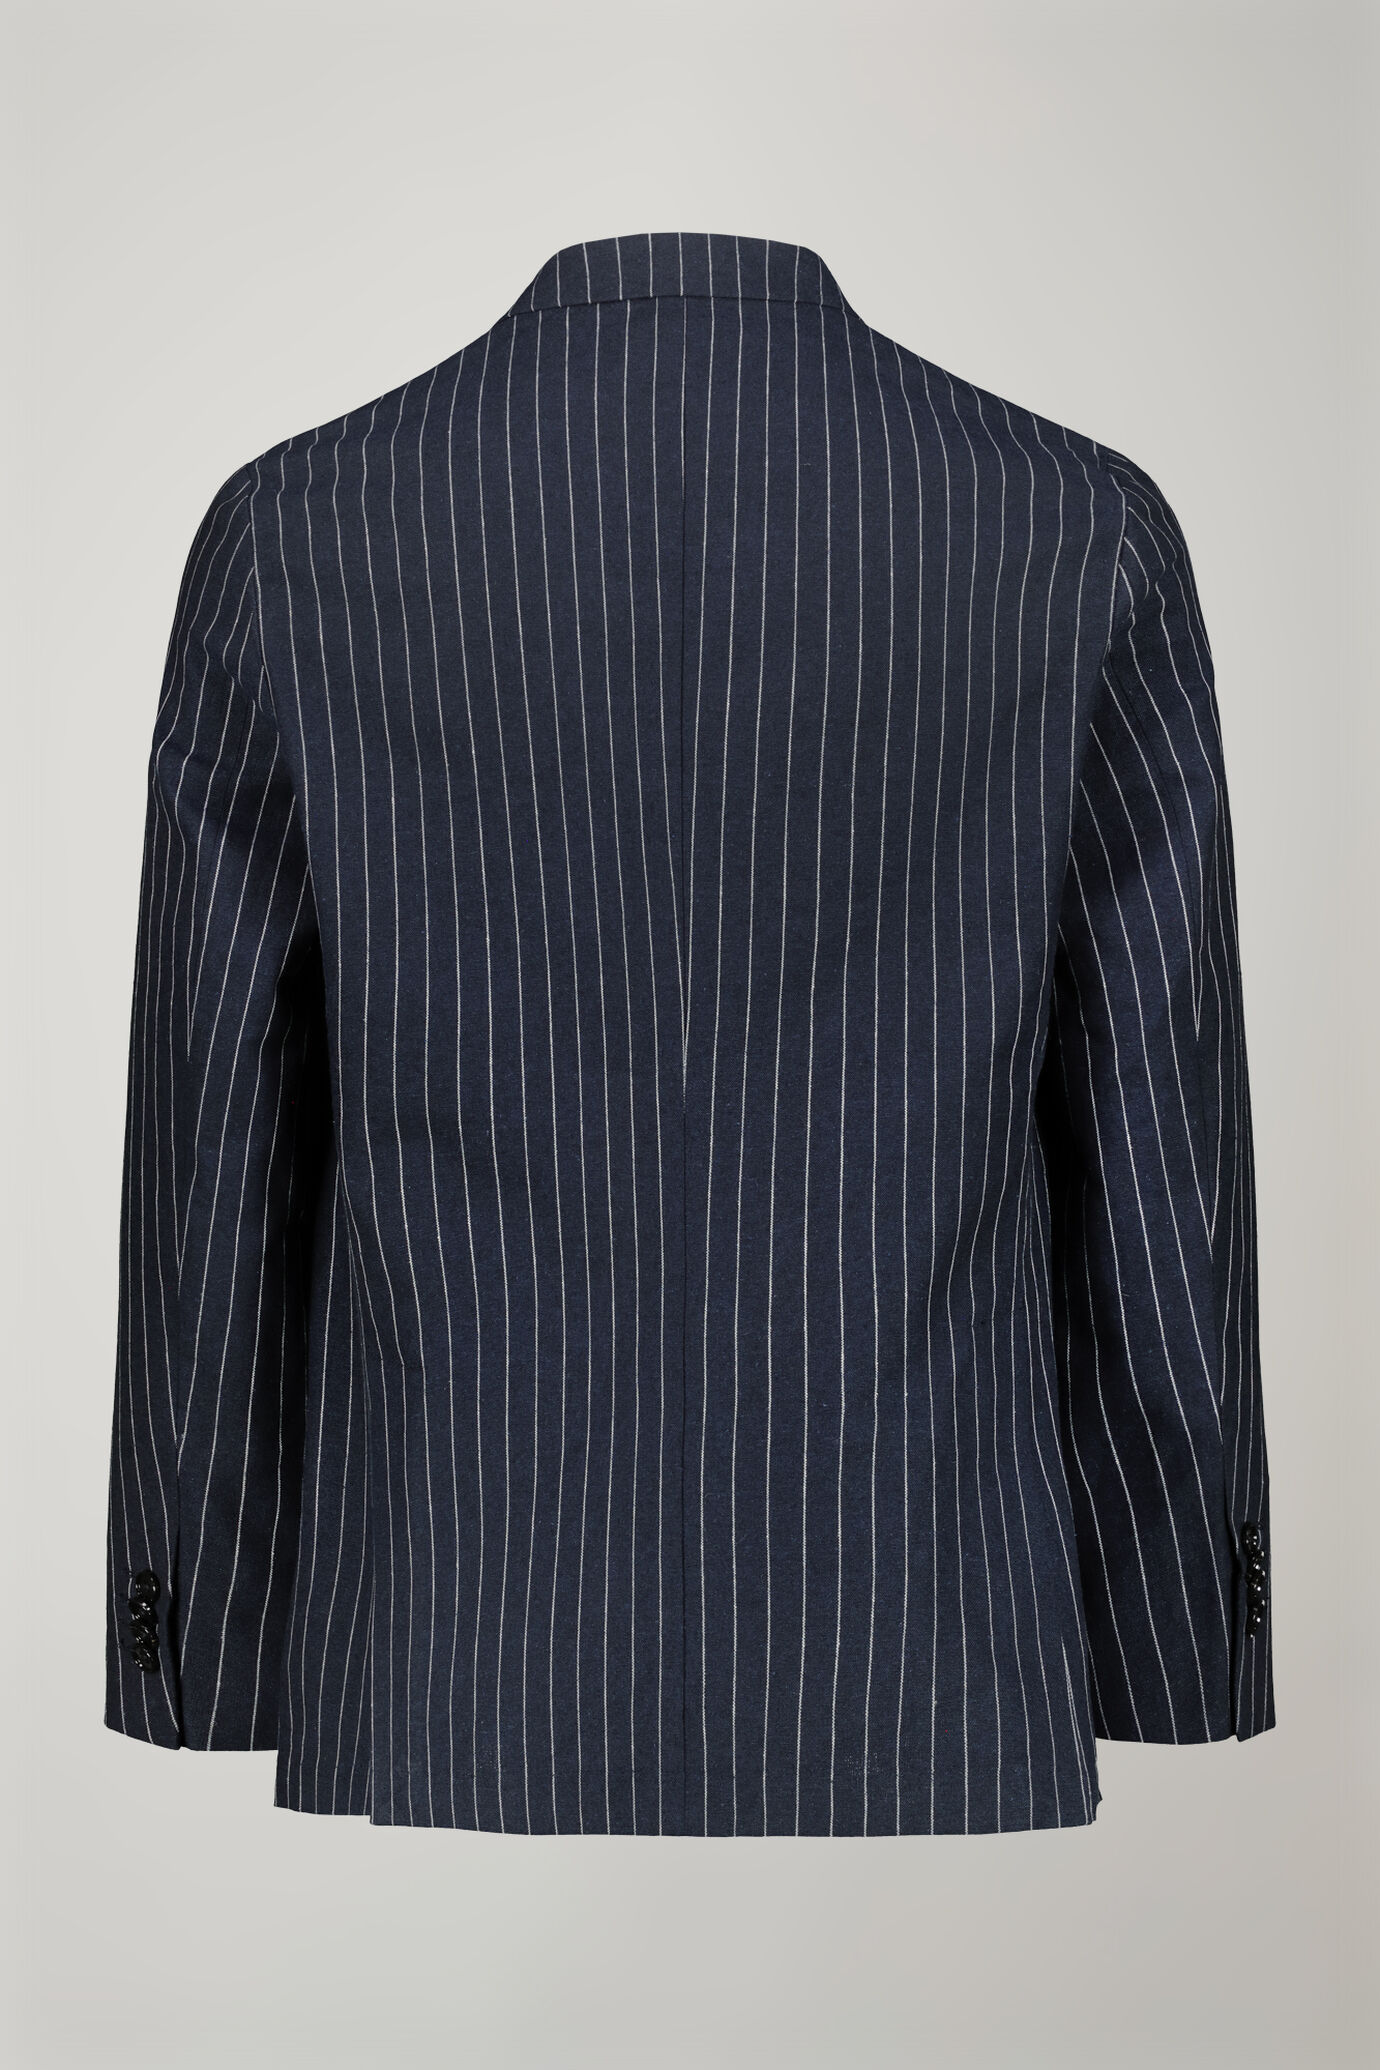 Veste croisée homme non doublée avec col en pointe et poches à rabat, en tissu lin et coton, motif à fines rayures coupe régulière image number 5